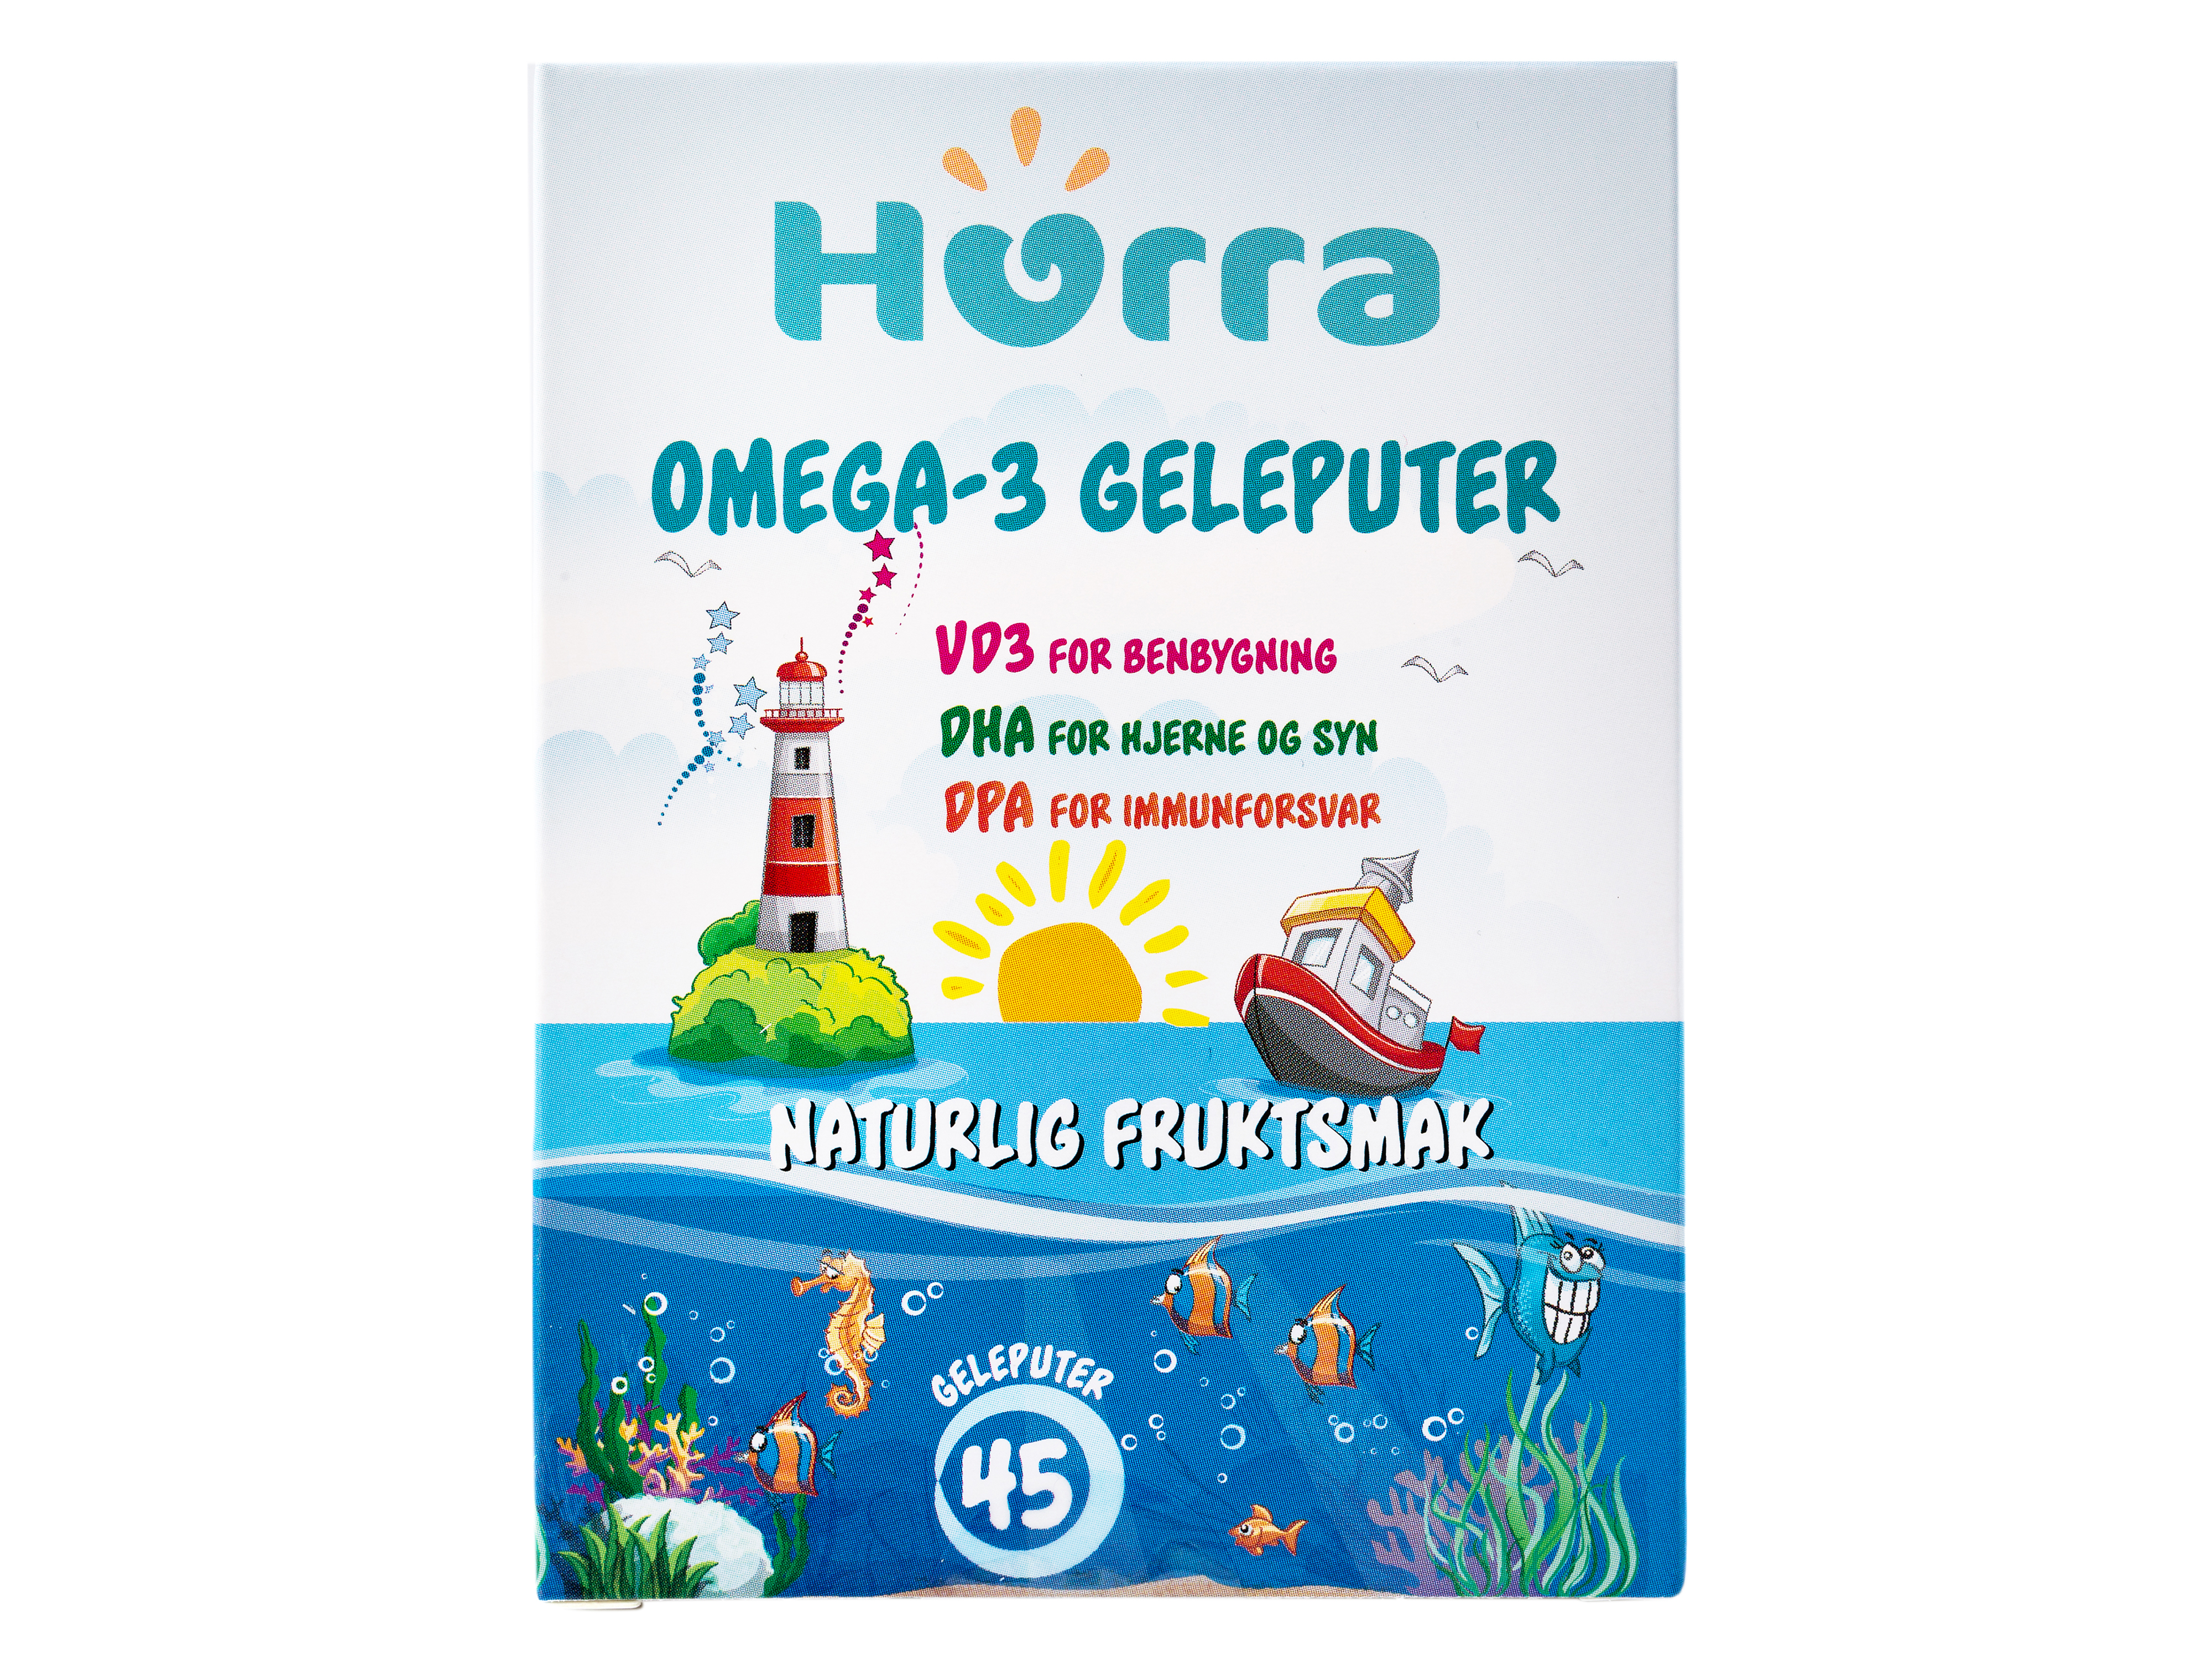 Hurra Omega-3 Geleputer, 45 stk